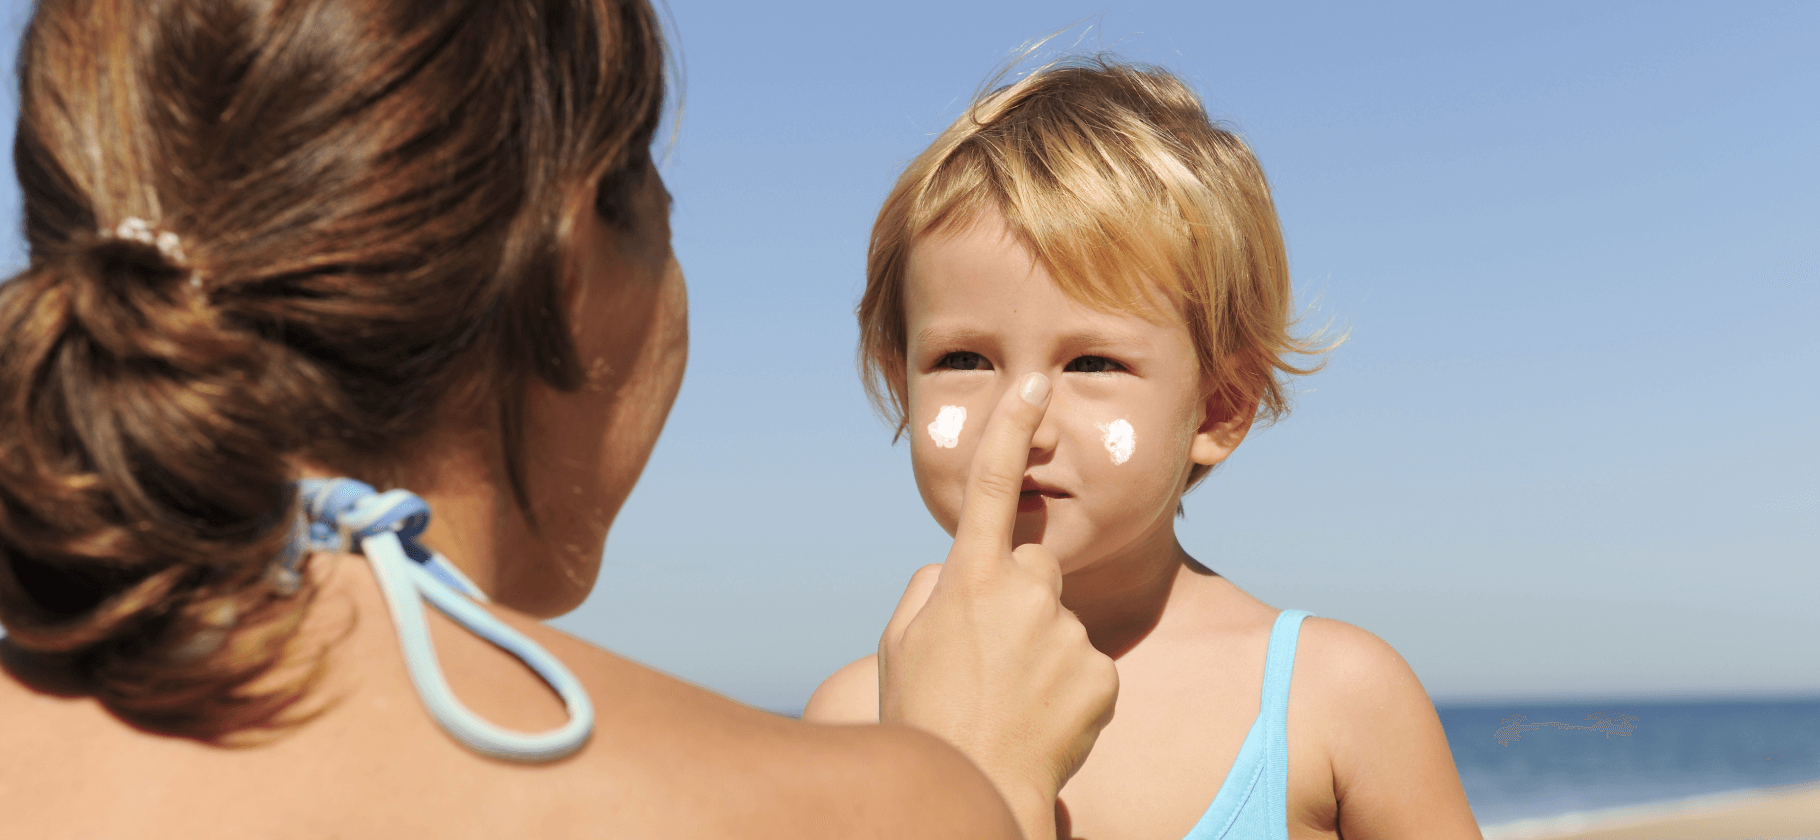 Как правильно наносить солнцезащитный крем ребенку: 8 советов